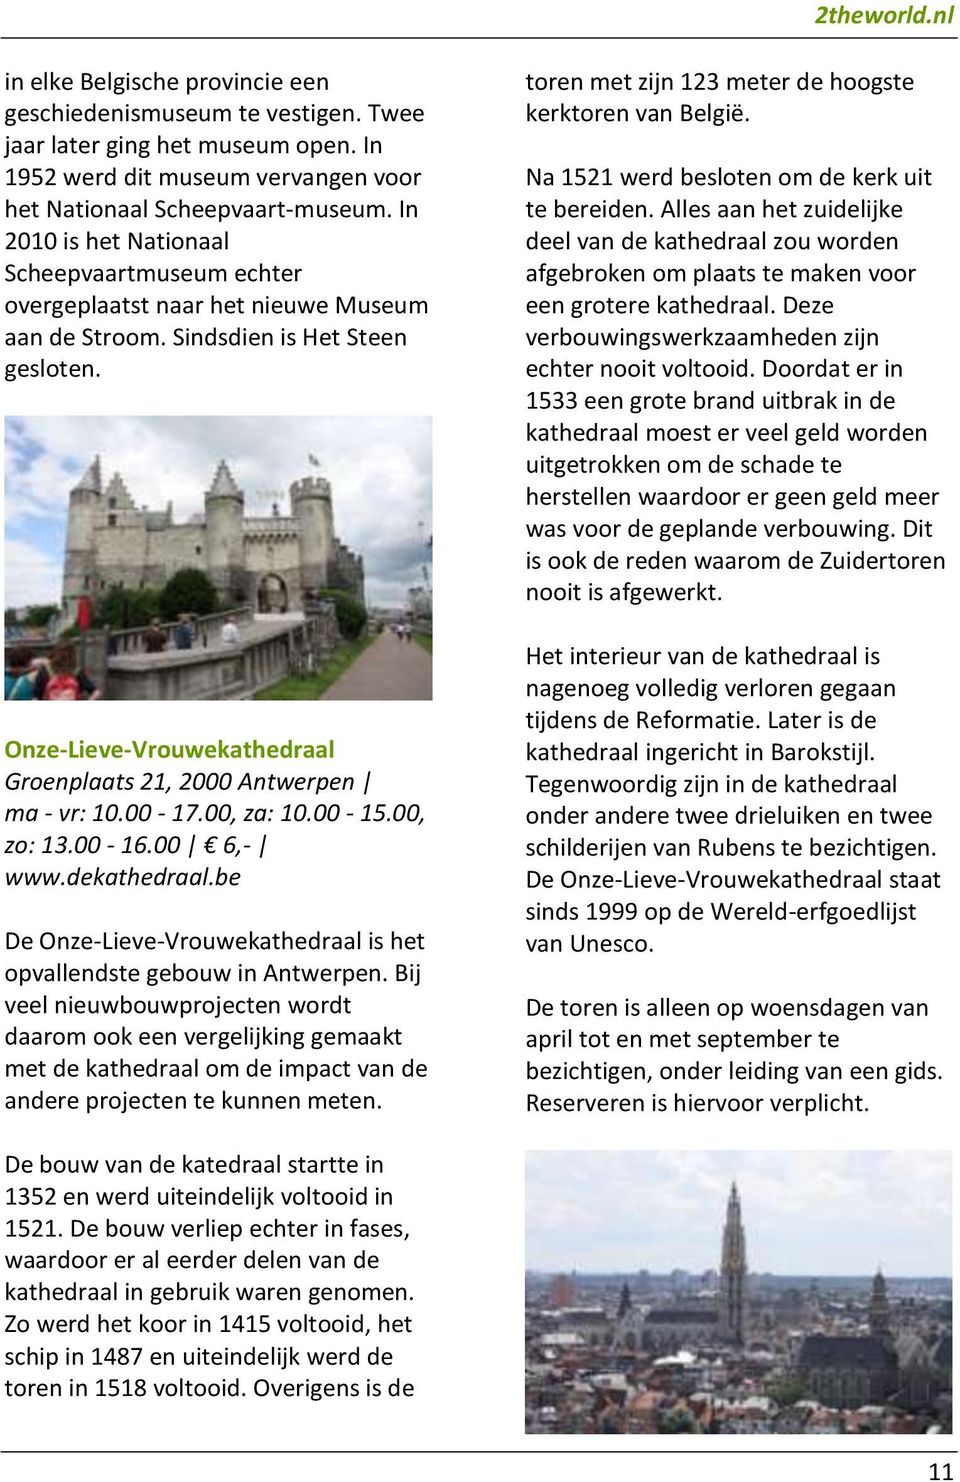 Onze-Lieve-Vrouwekathedraal Groenplaats 21, 2000 Antwerpen ma - vr: 10.00-17.00, za: 10.00-15.00, zo: 13.00-16.00 6,- www.dekathedraal.